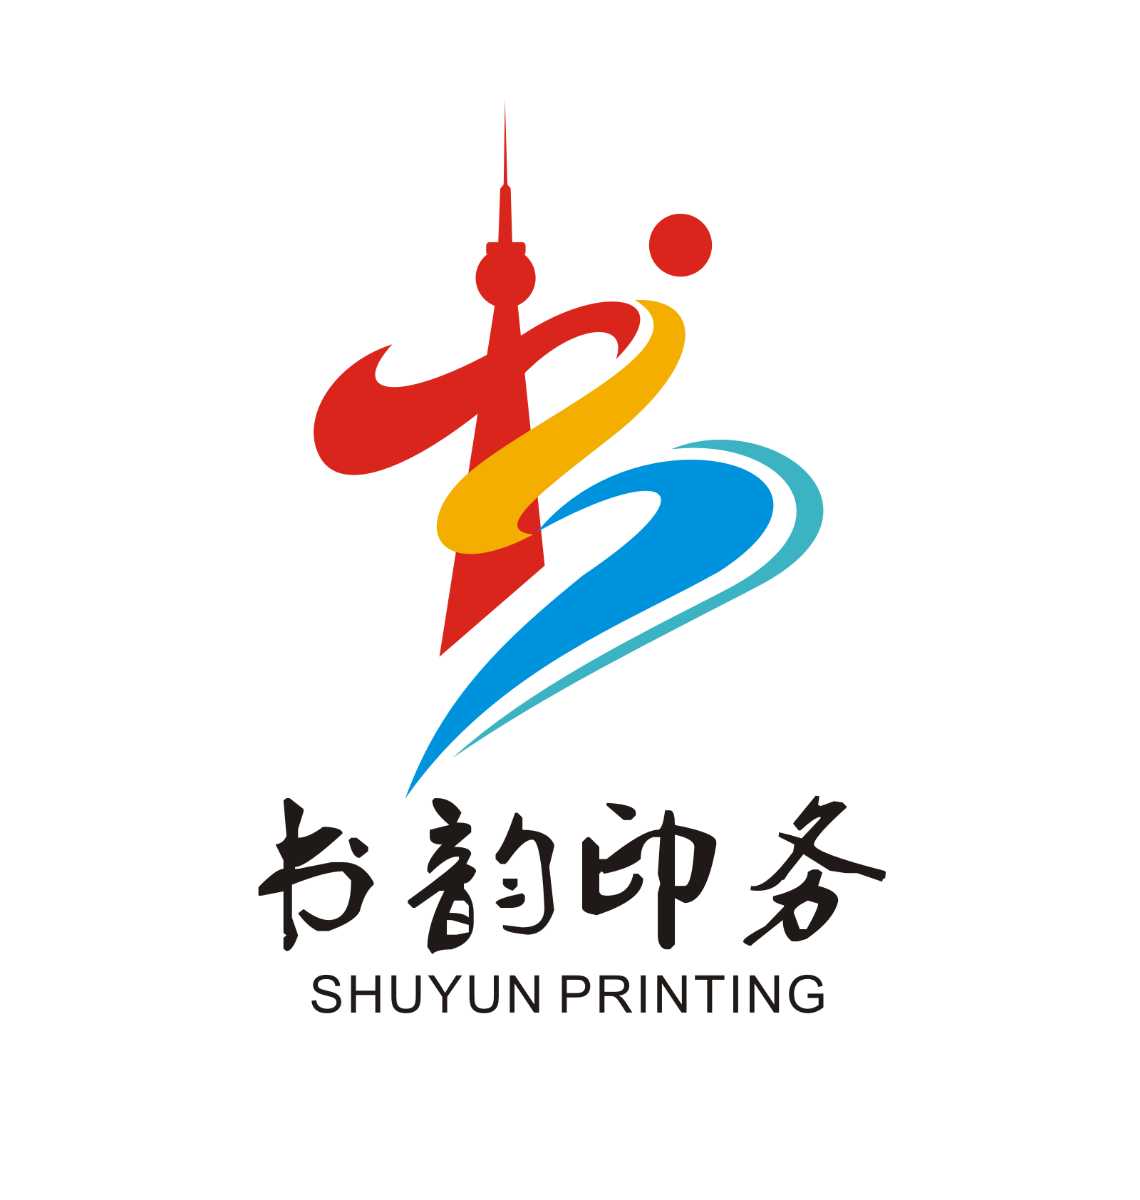 河南省书韵印务有限公司的企业标志